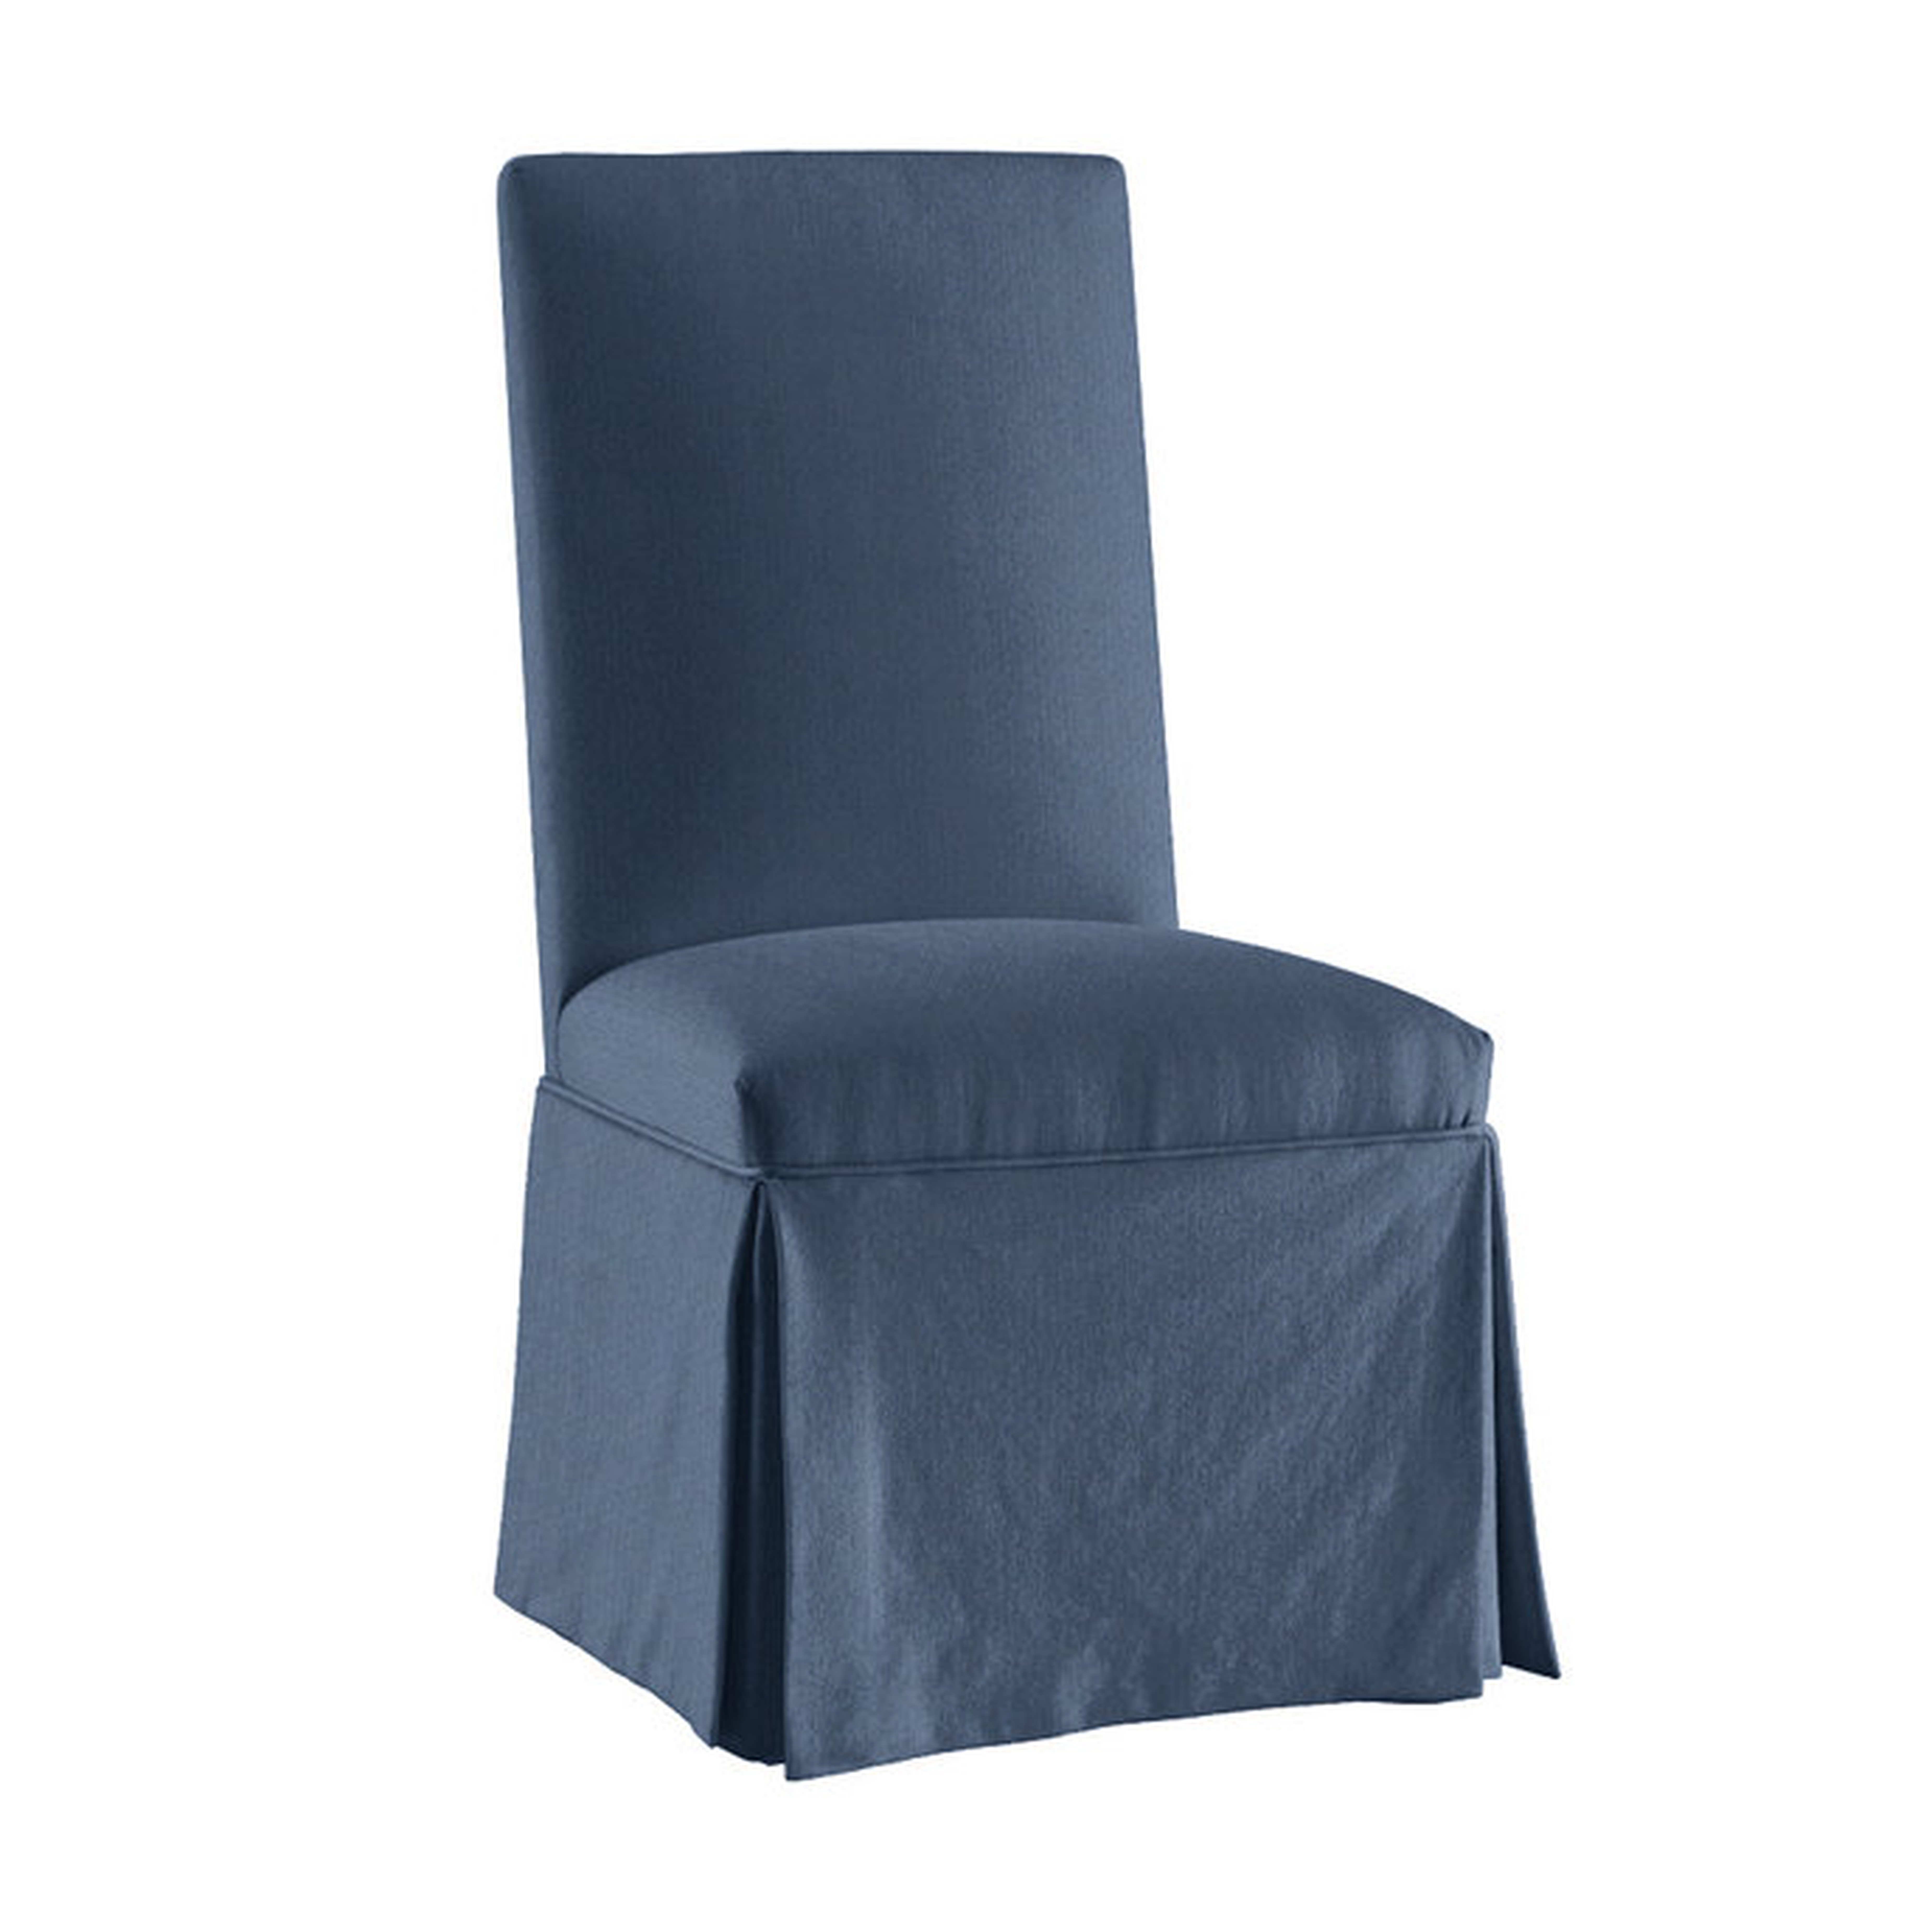 Parsons Chair Slipcover - Suzanne Kasler Signature Duck Slipcover - Indigo - Ballard Designs